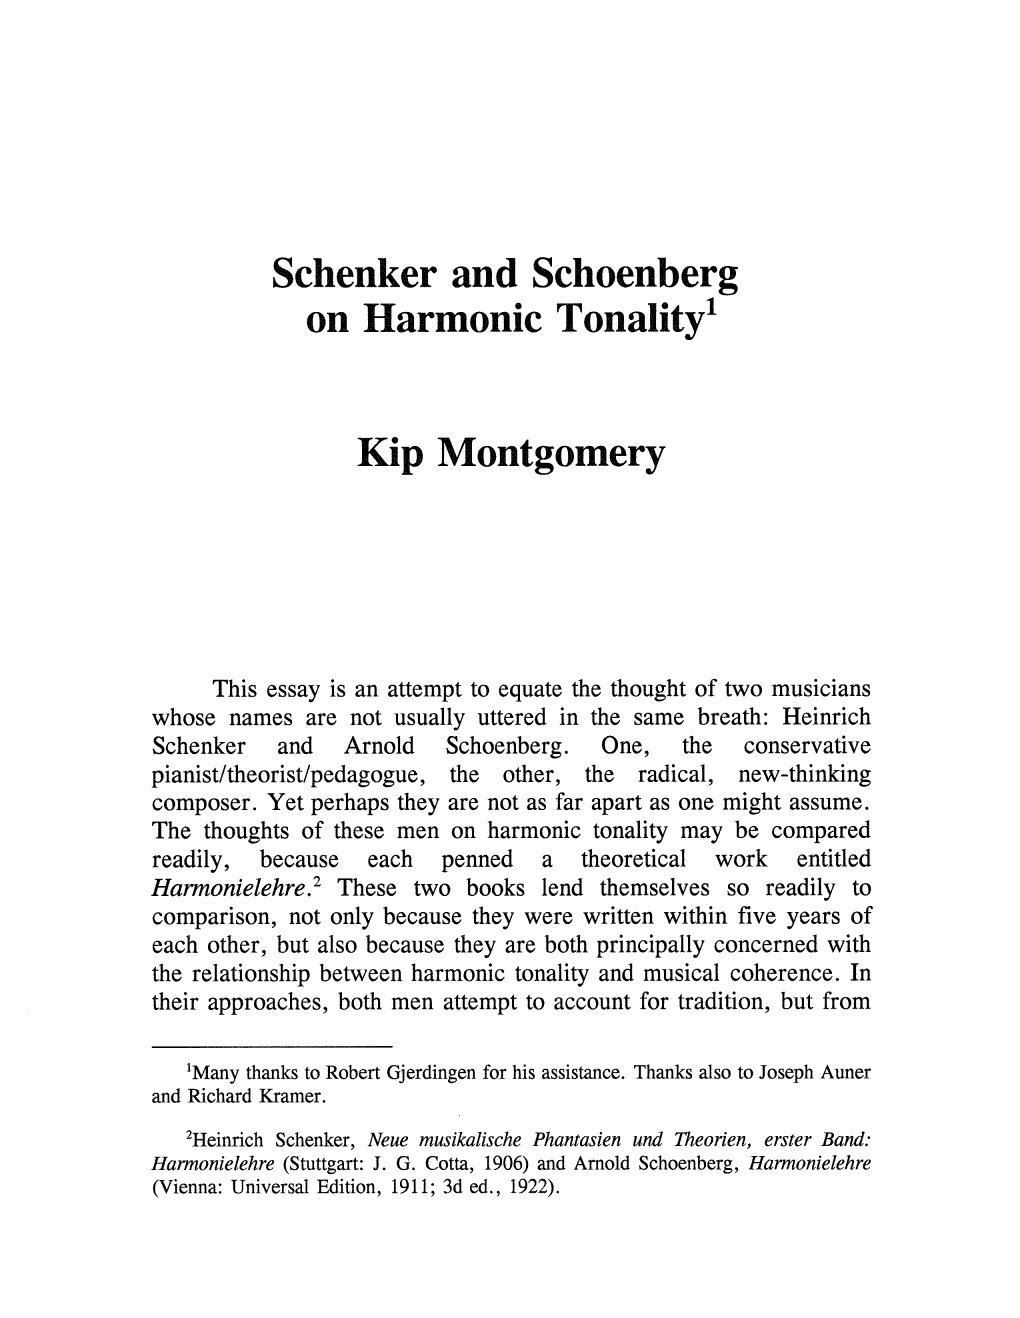 Schenker and Schoenberg on Harmonic Tonality!